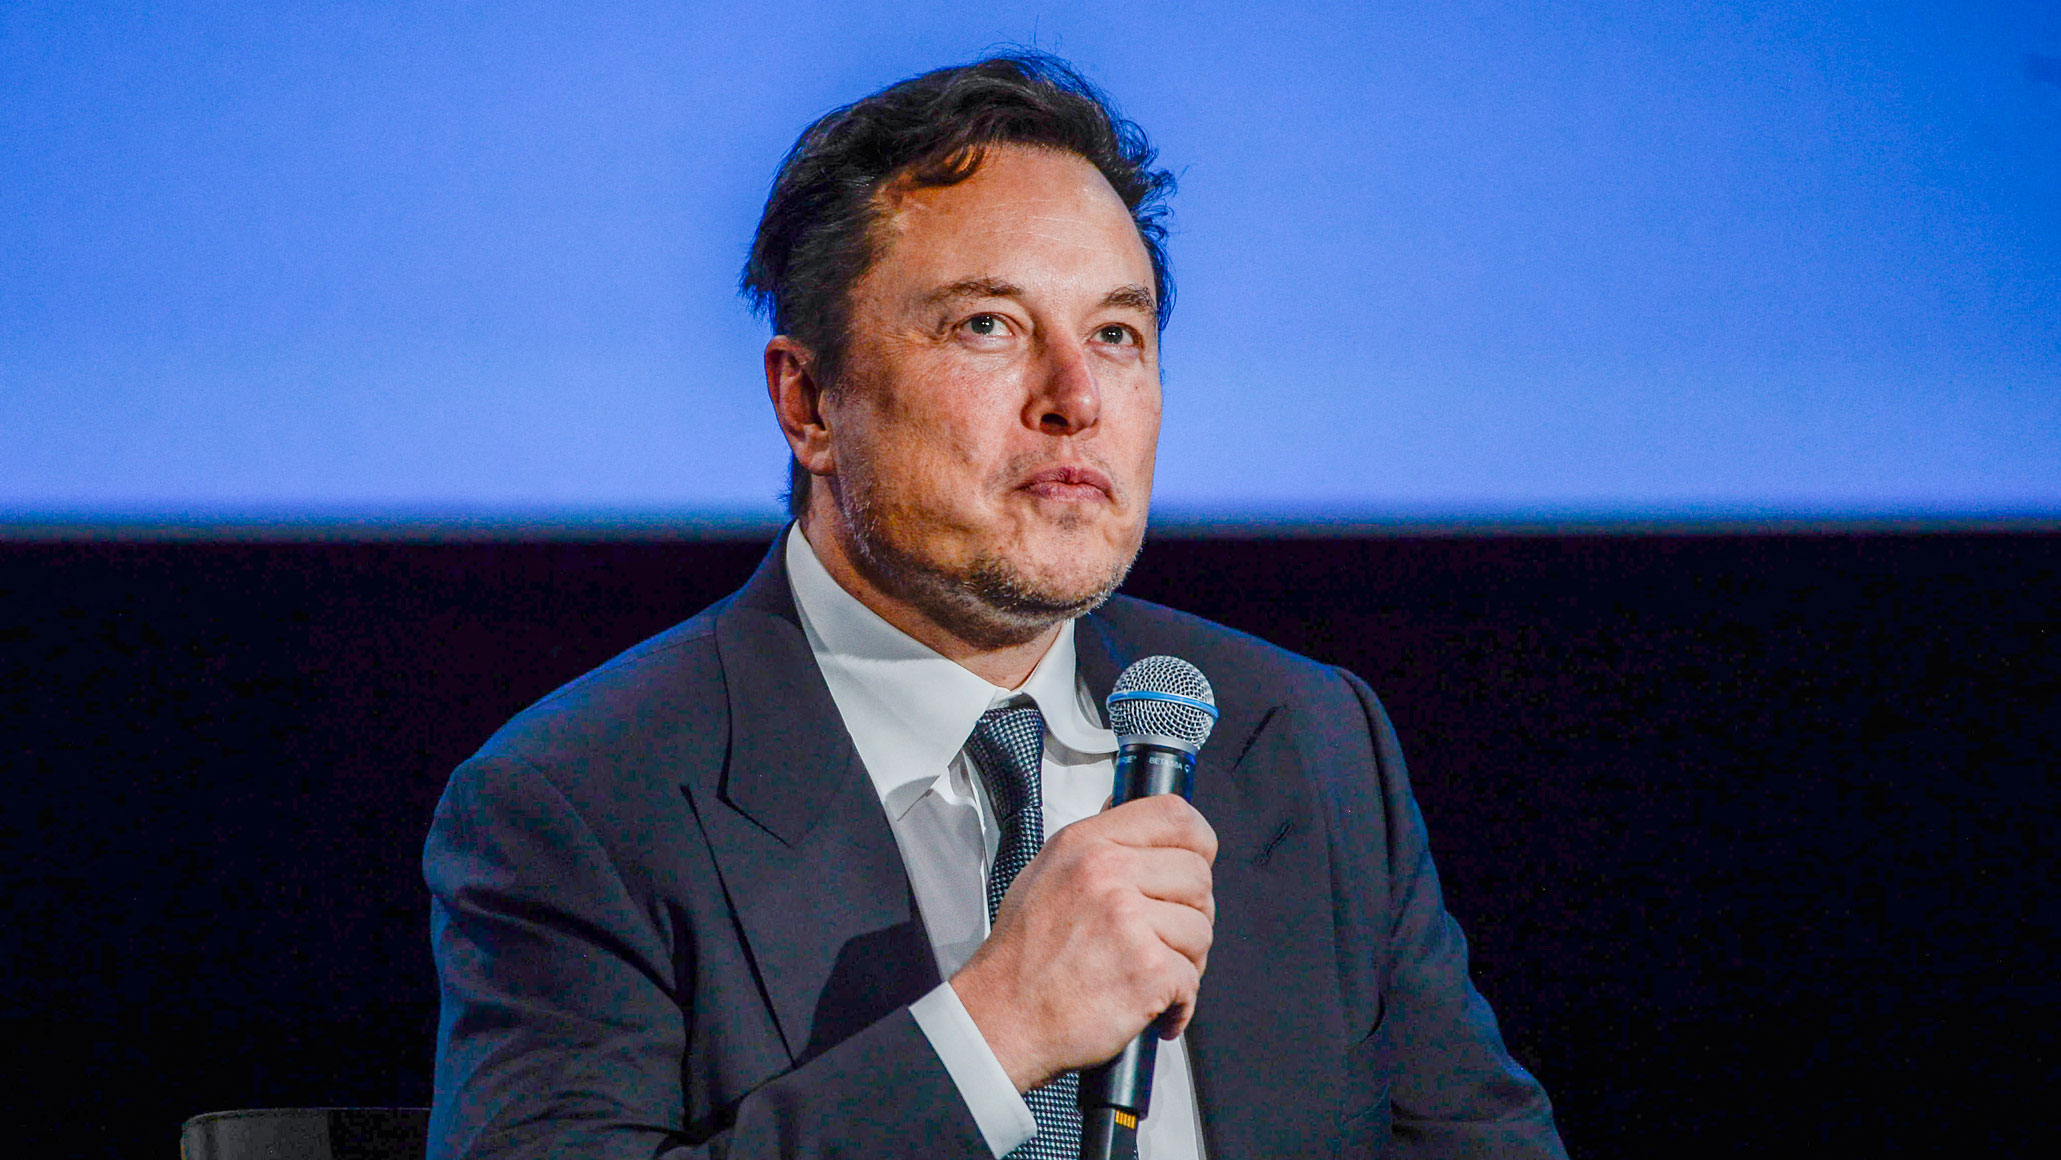 Le PDG de Tesla, Elon Musk, regarde vers le haut alors qu'il s'adresse aux invités lors de la réunion Offshore Northern Seas 2022 (ONS) à Stavanger, en Norvège, le 29 août 2022.